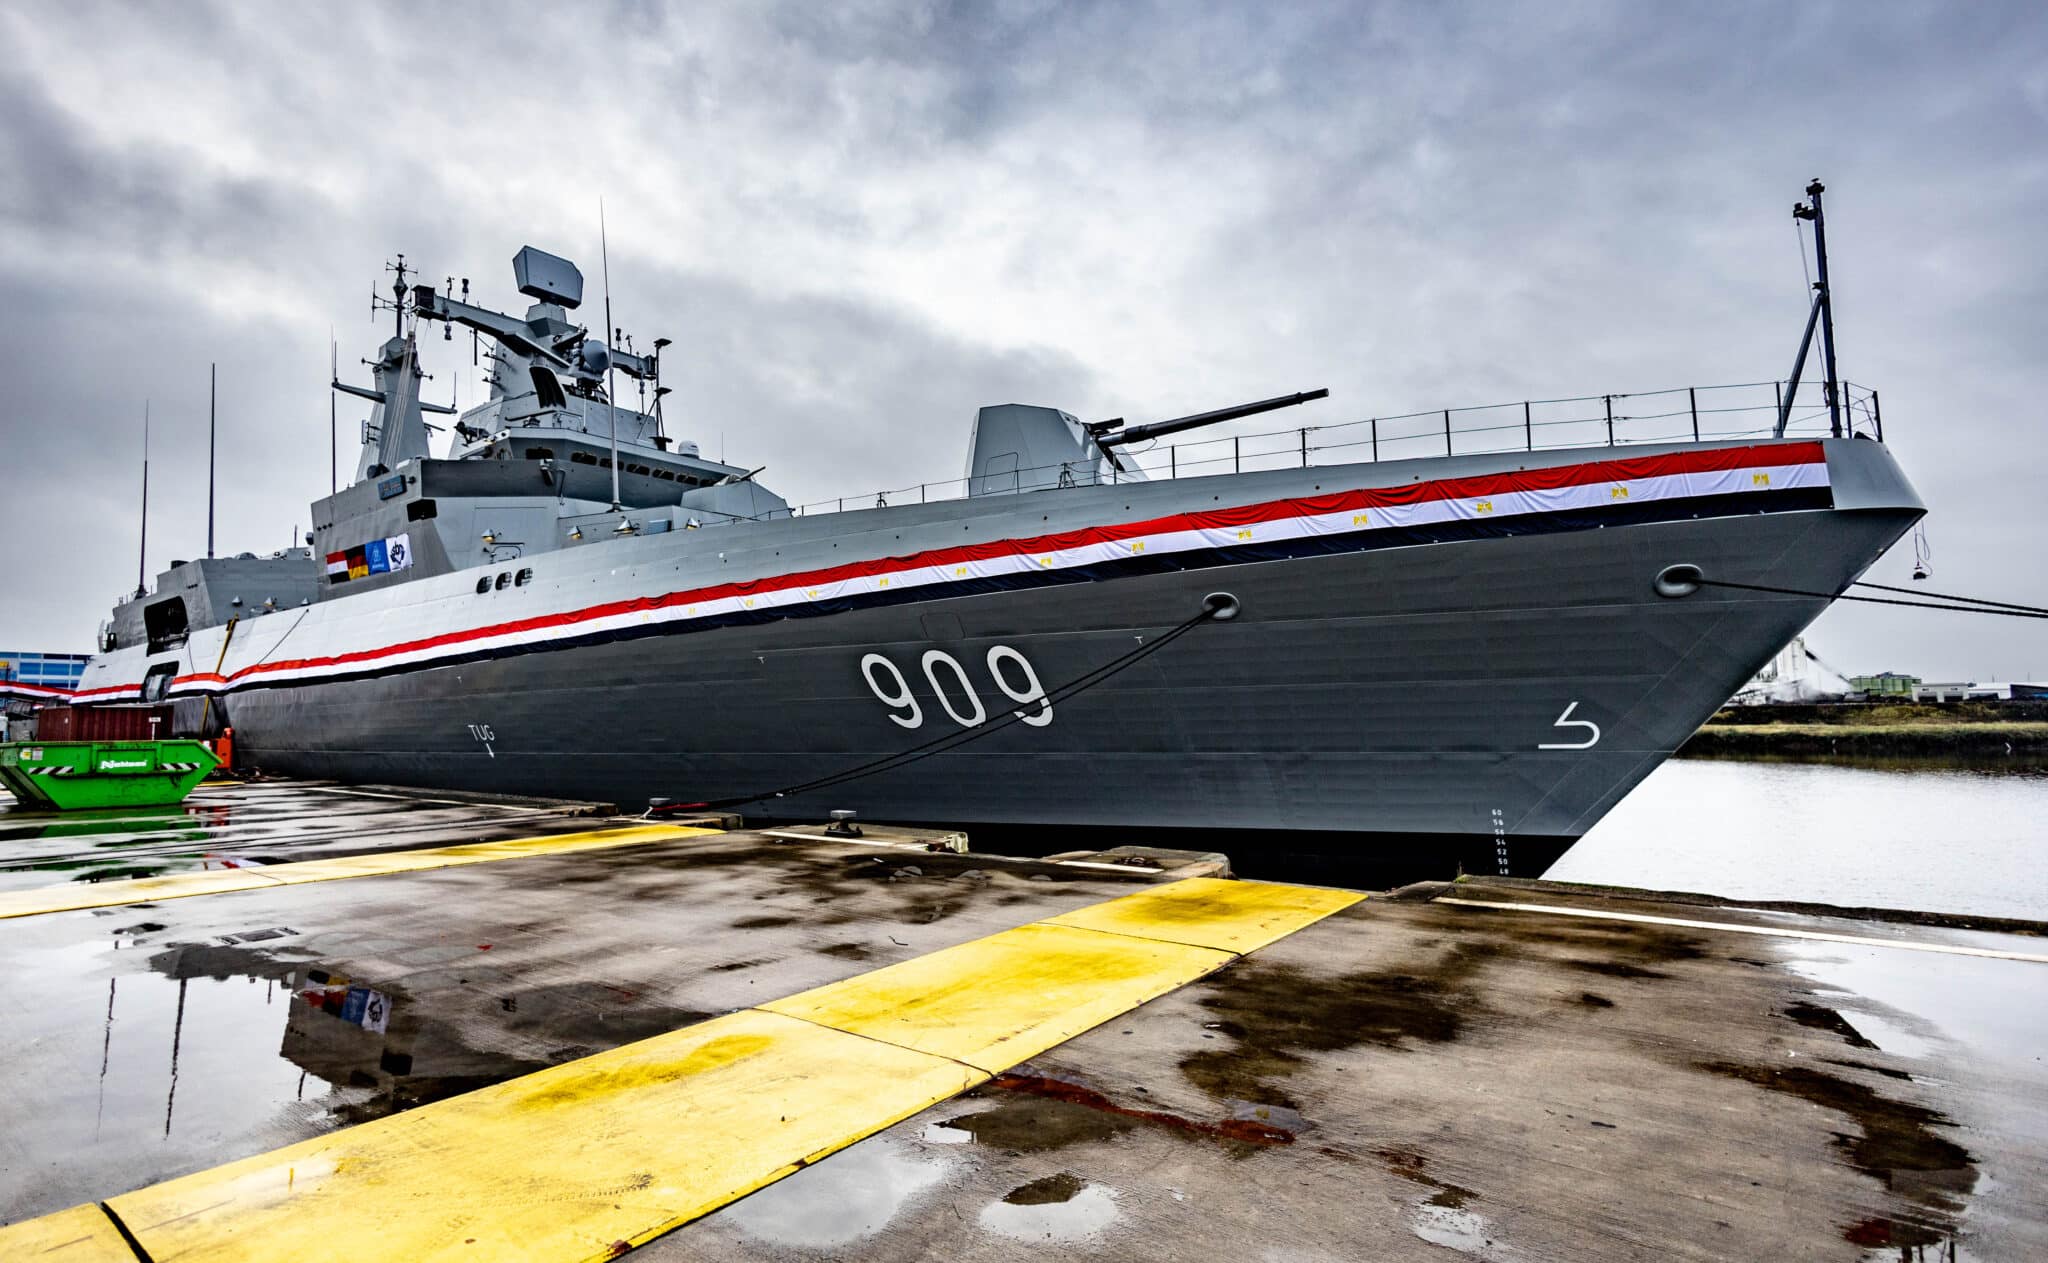 شركة Thyssenkrupp Marine Systems تسلم الفرقاطة الثالثة من طراز MEKO إلى البحرية المصرية